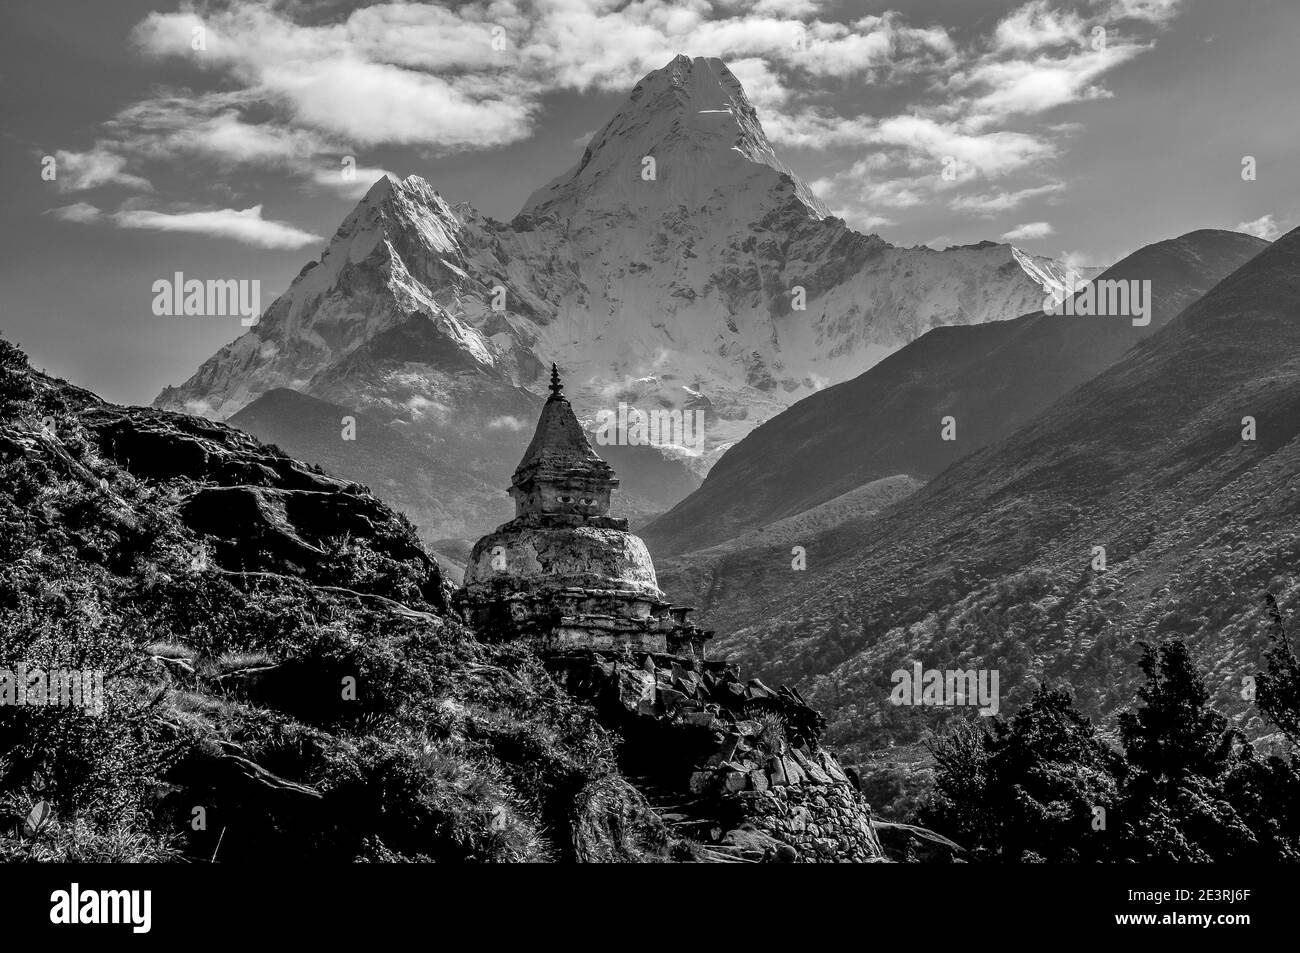 Népal. Montagnes de l'Himalaya en monochrome dans le parc national de Sagarmatha de la vallée de Solu Khumbu du Mont Everest au Népal, avec la célèbre montagne Ama Dablam vu ici depuis près du monastère de Thyangboche en route vers Gorak Shep et le camp de base d'alpinisme Everest. Banque D'Images